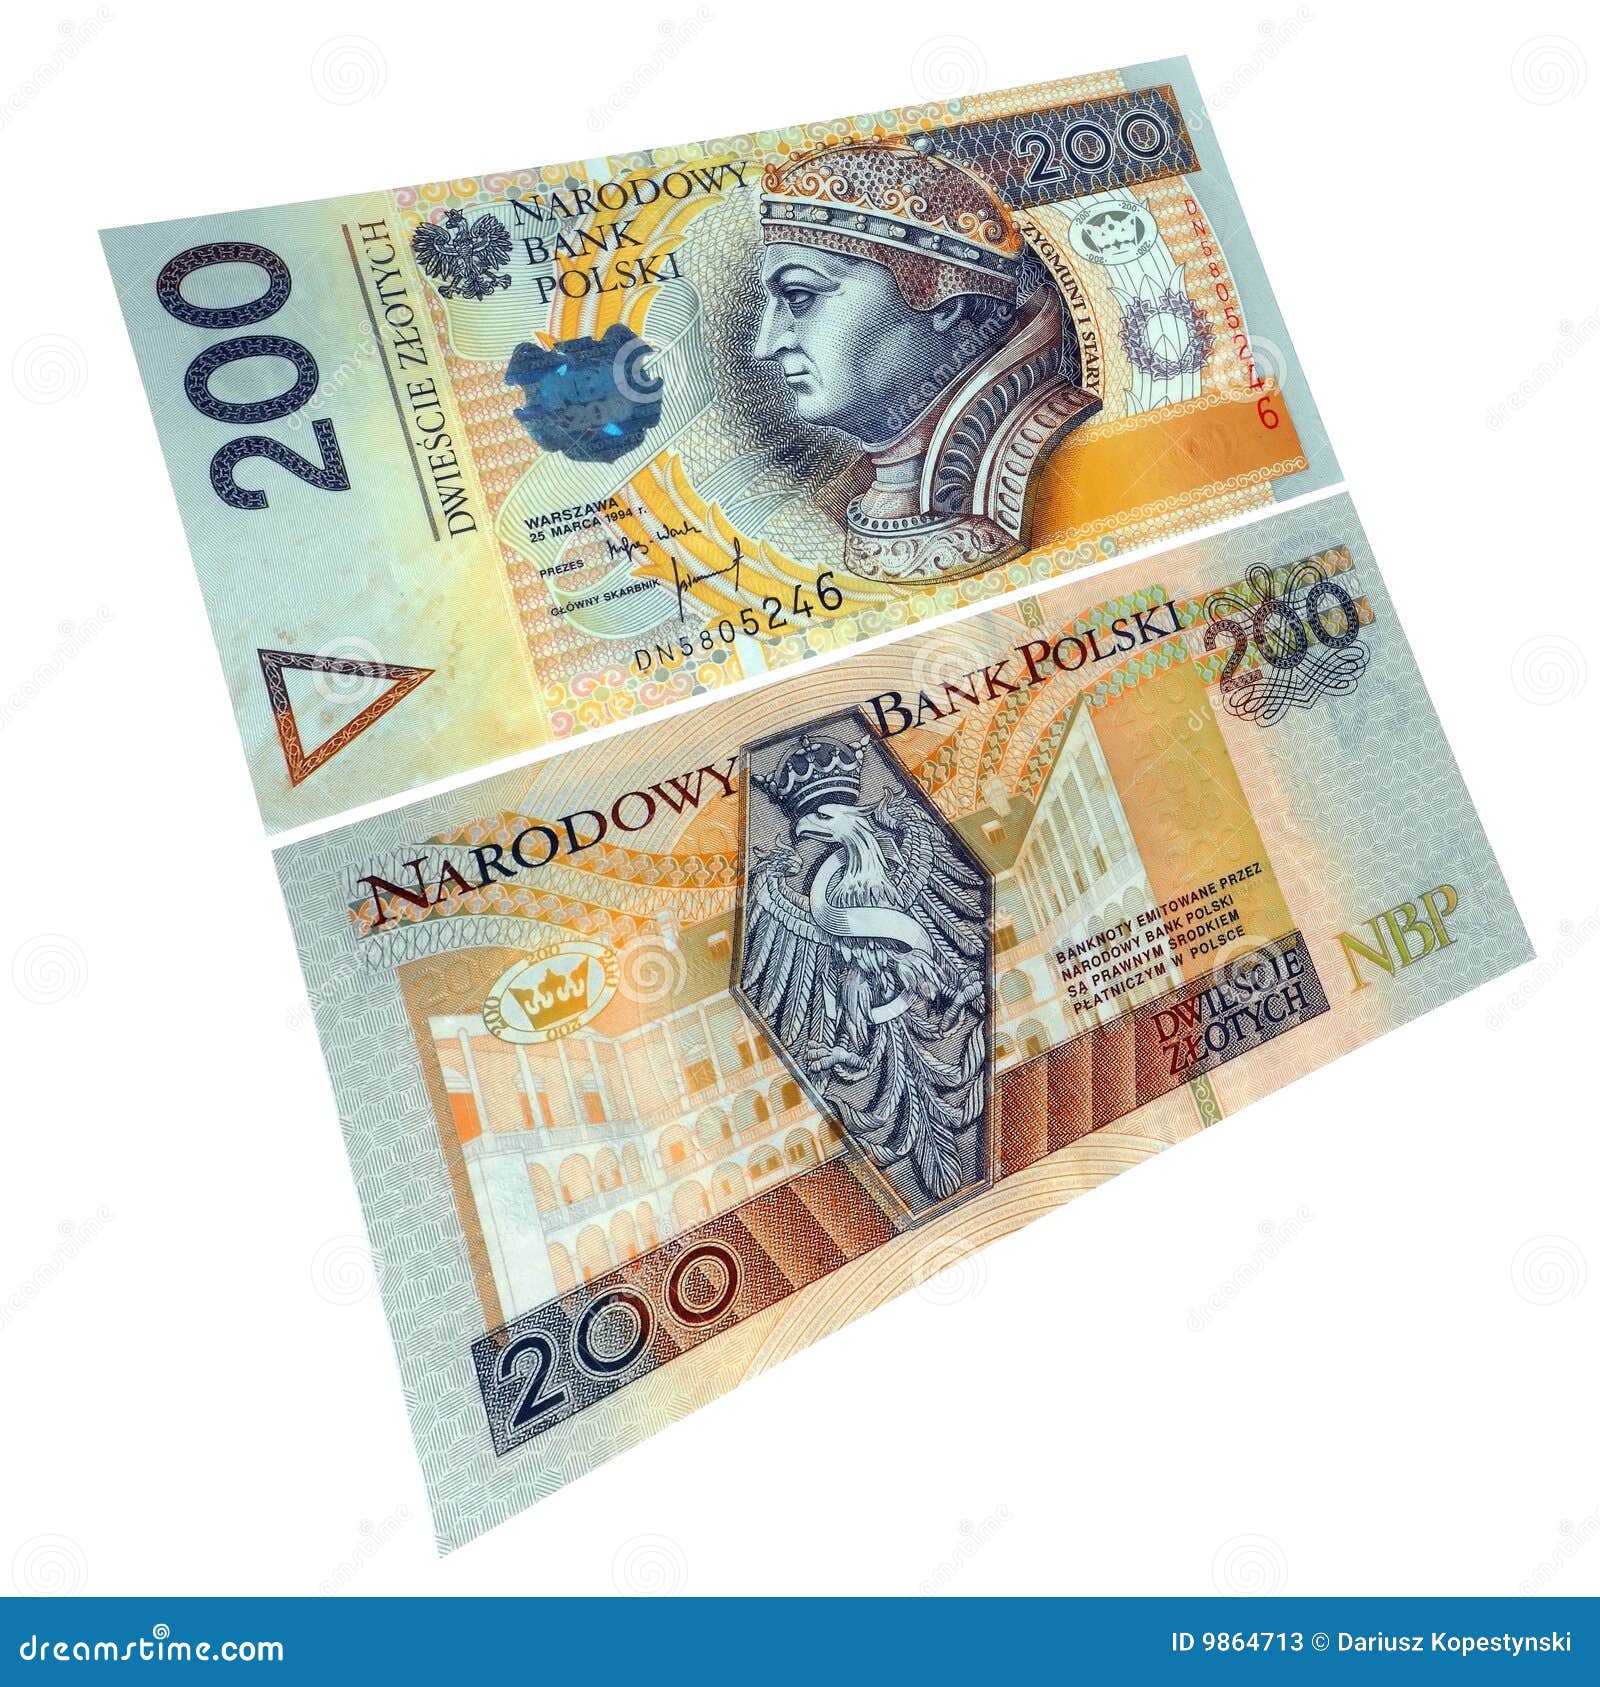 Polnische Papierwährung. Bargeld-Papierbanknote des Zlotys zweihundert polnische. Beide Seiten. Getrennt auf Weiß.